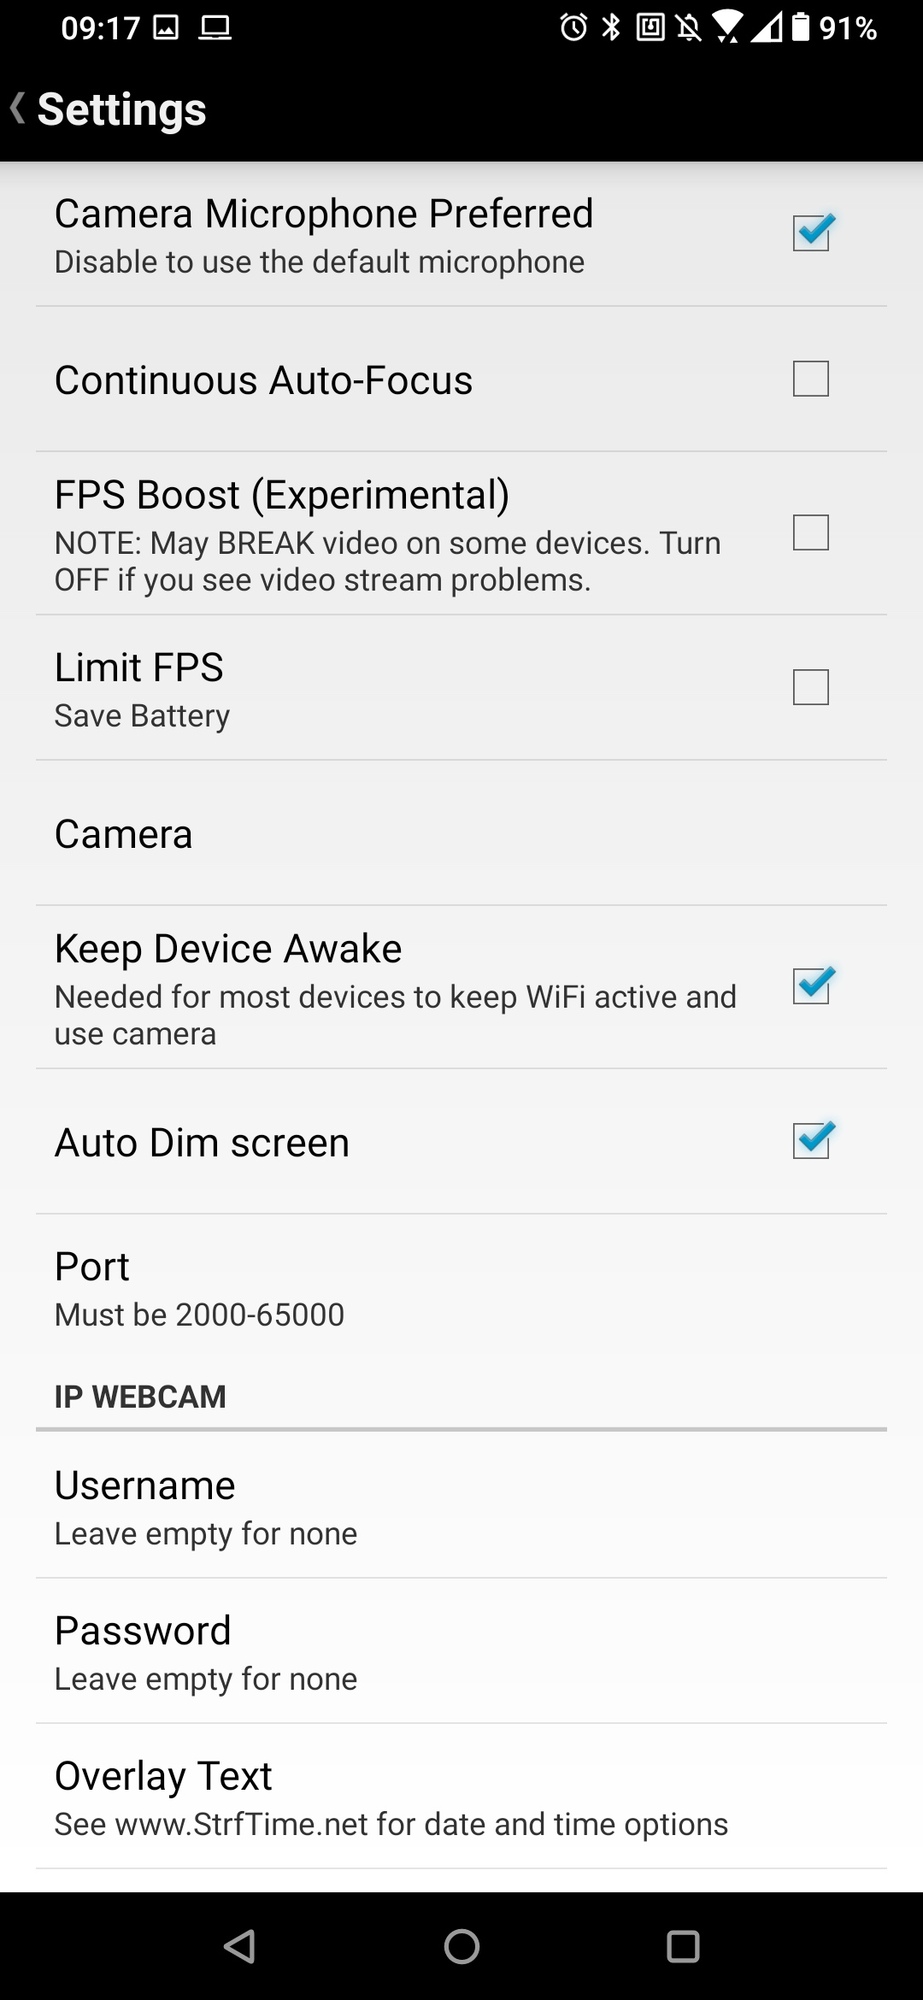 Screenshot of the DroidCam phone app settings menu